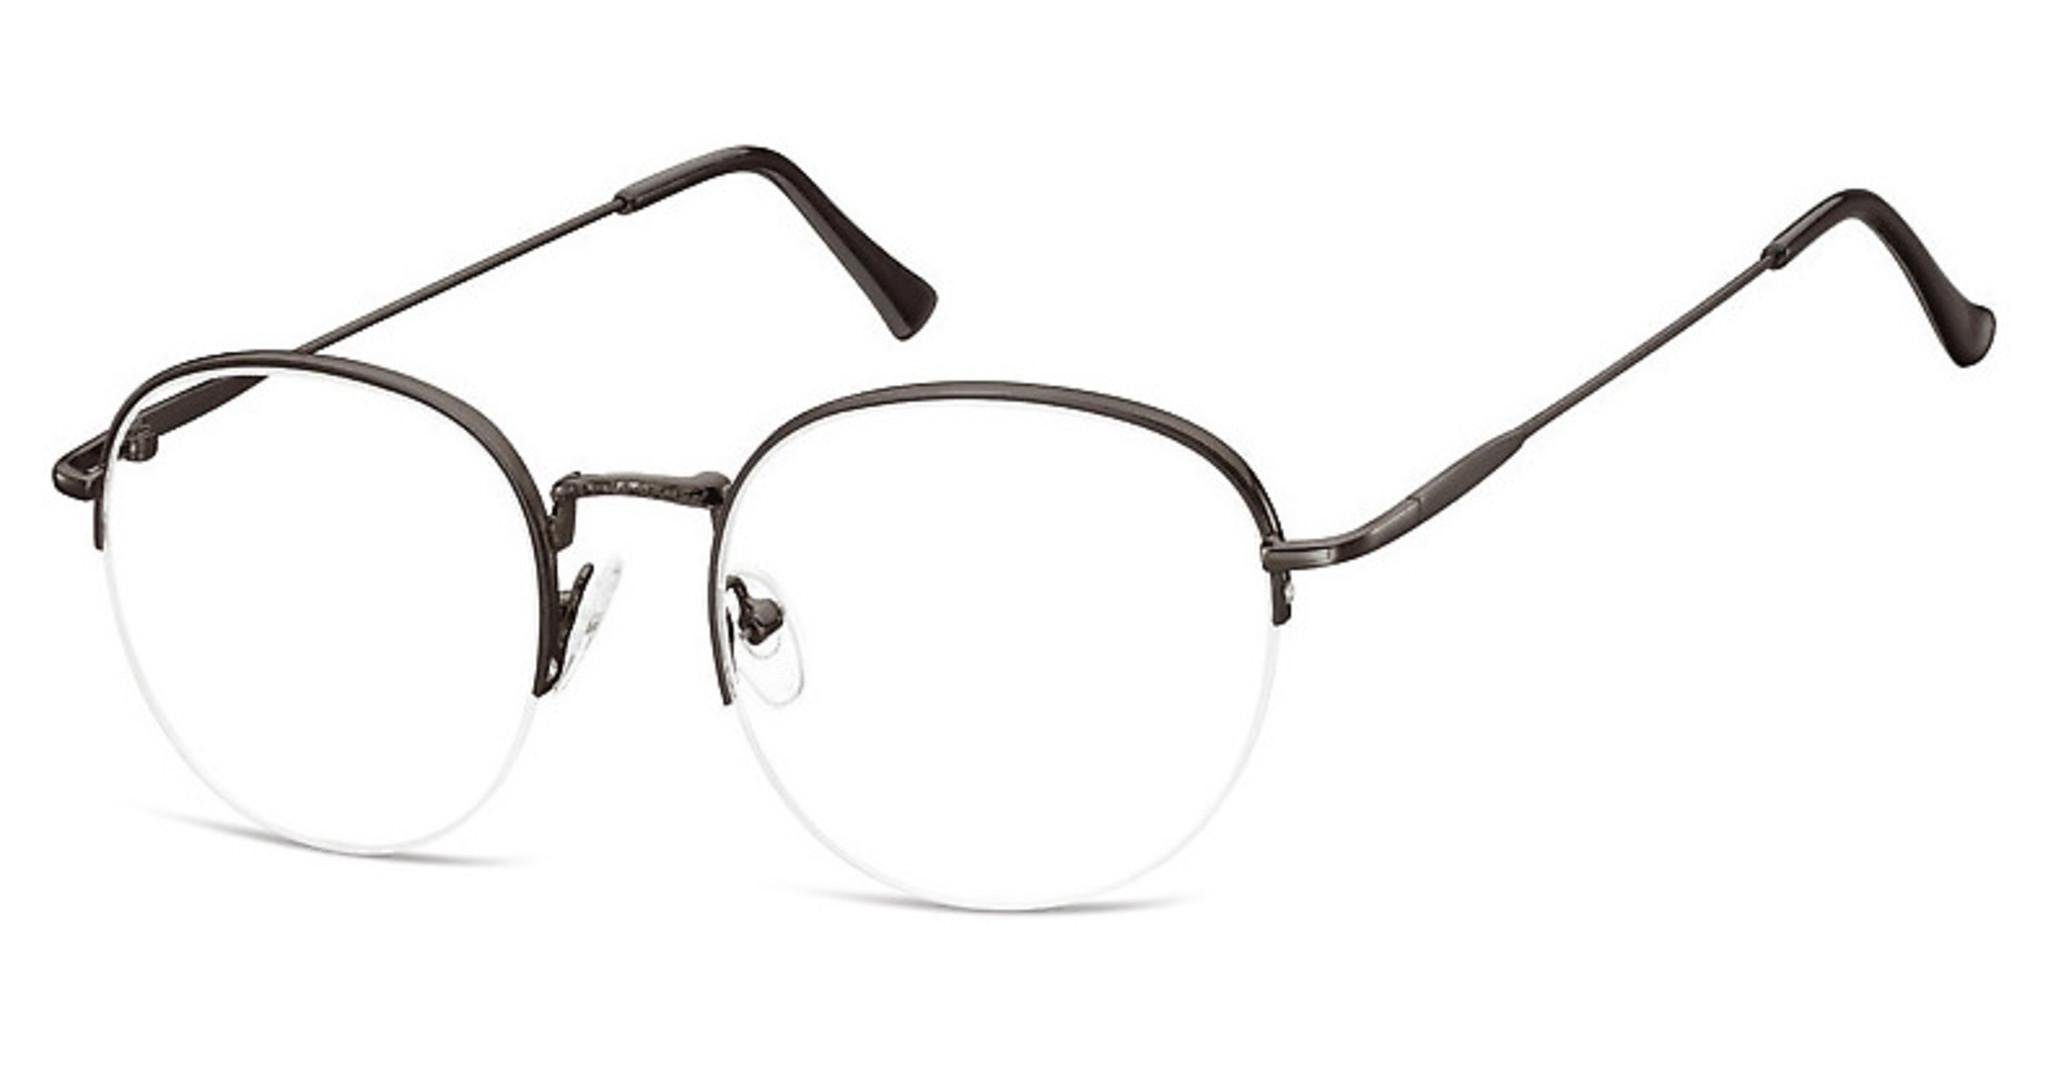 Brille schwarz SUNOPTIC 930